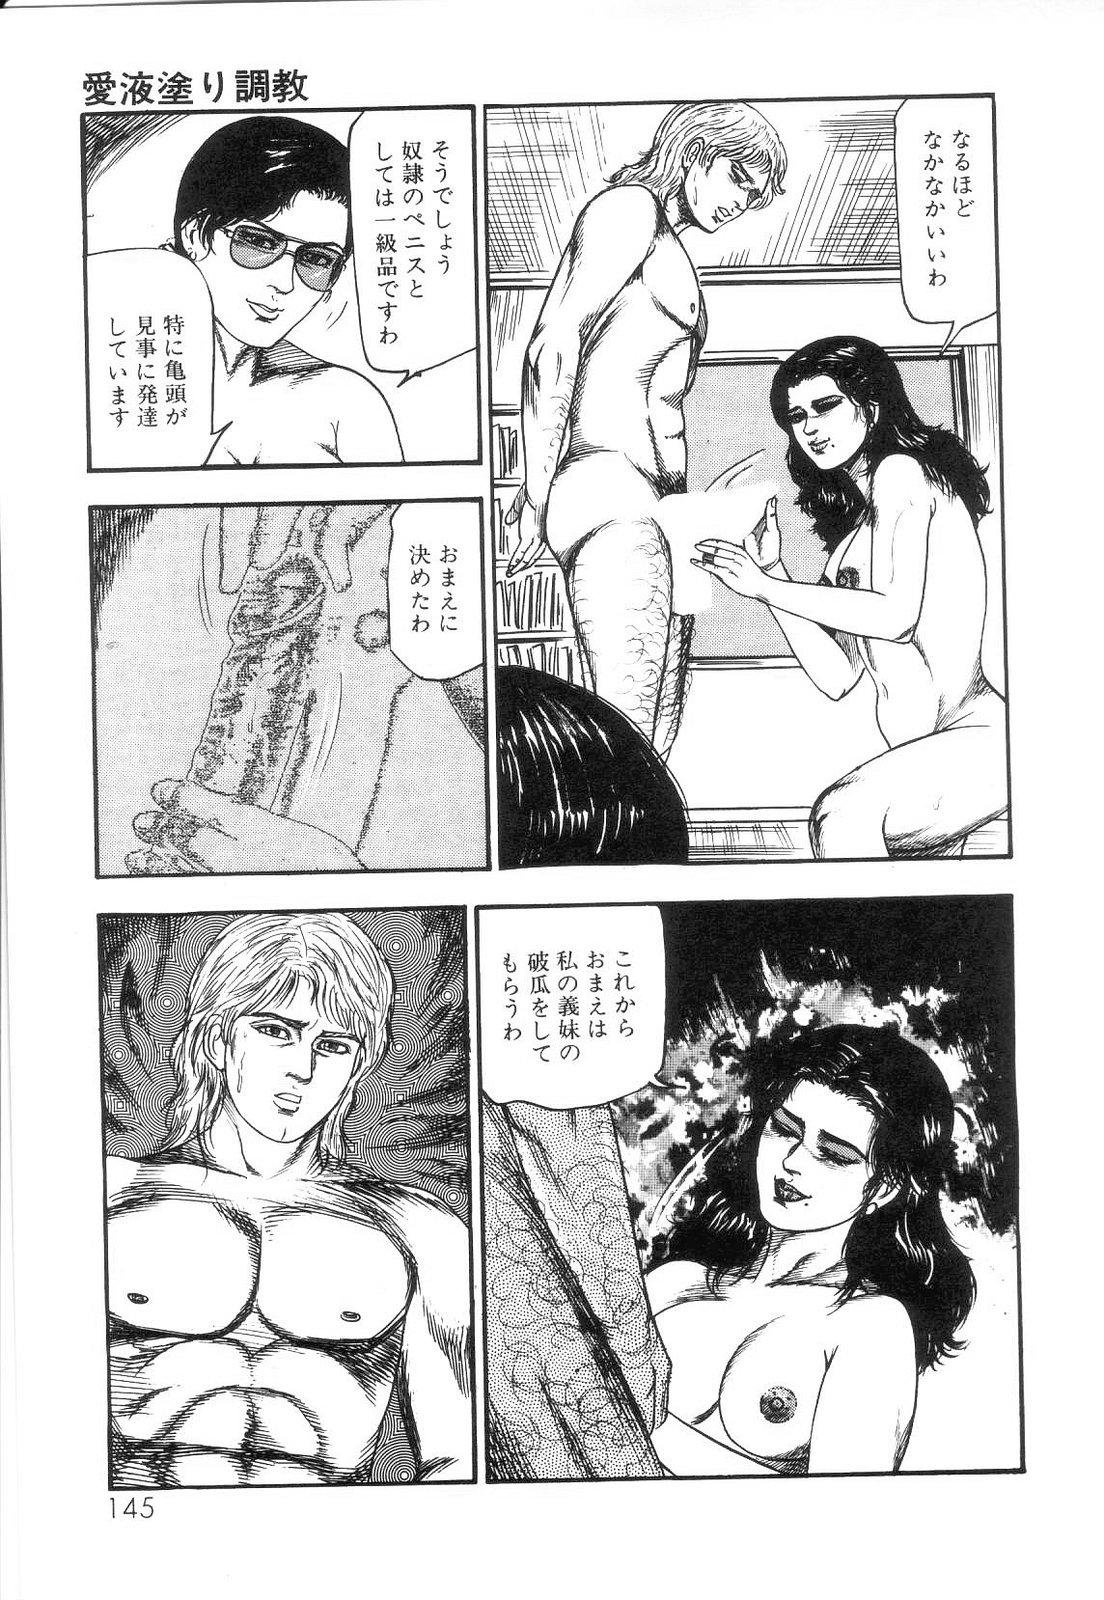 Shiro no Mokushiroku Vol. 4 - Bichiku Karen no Shou 146